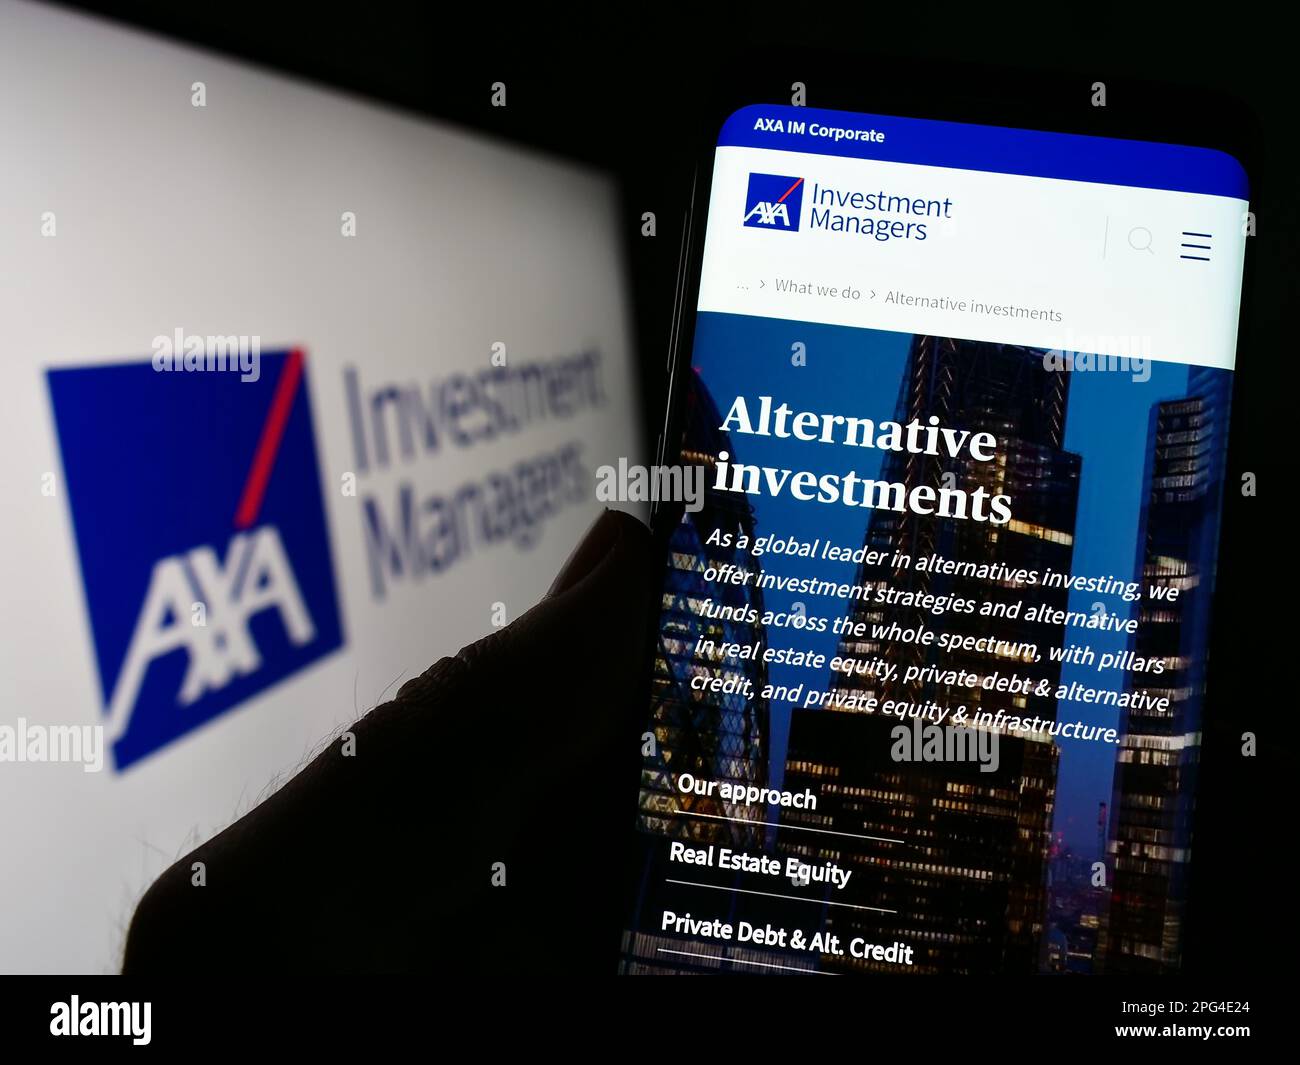 Persona che tiene il cellulare con il Web page della società di investimento Axa Investment Managers sullo schermo di fronte al logo. Messa a fuoco al centro del display del telefono. Foto Stock